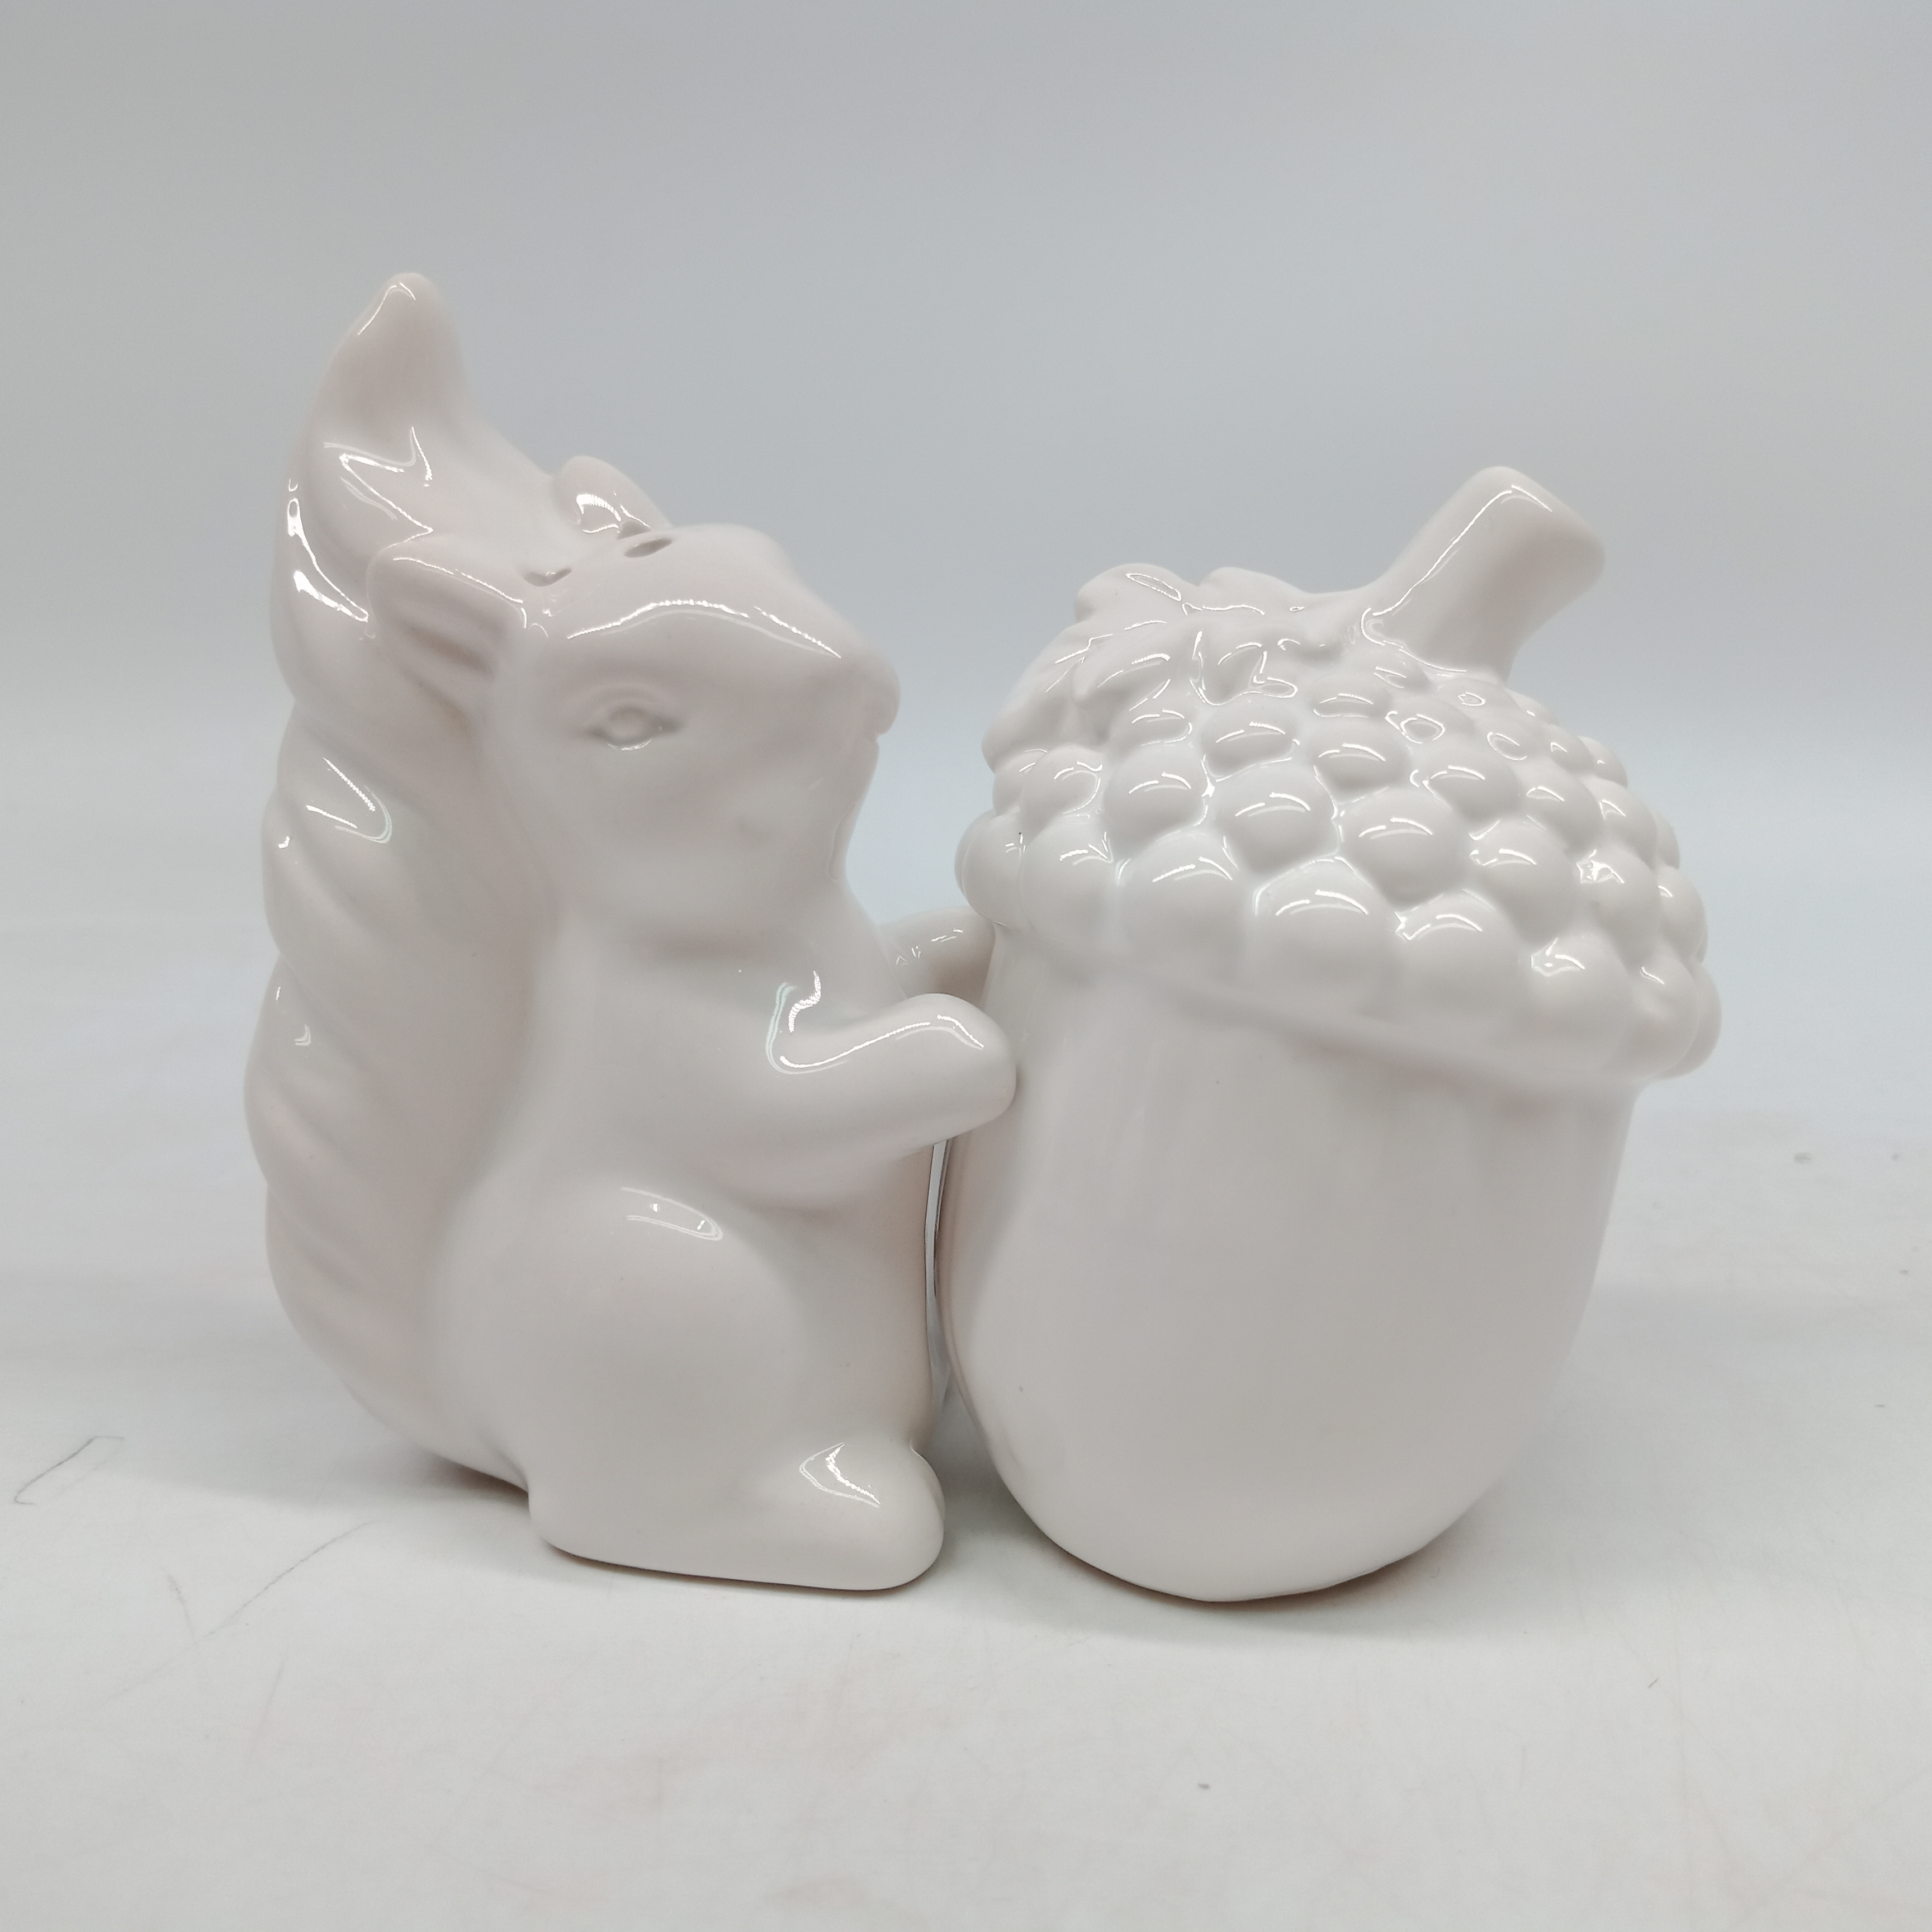 Squirrel & Acorn Salt & Pepper Shaker Set, Ceramic